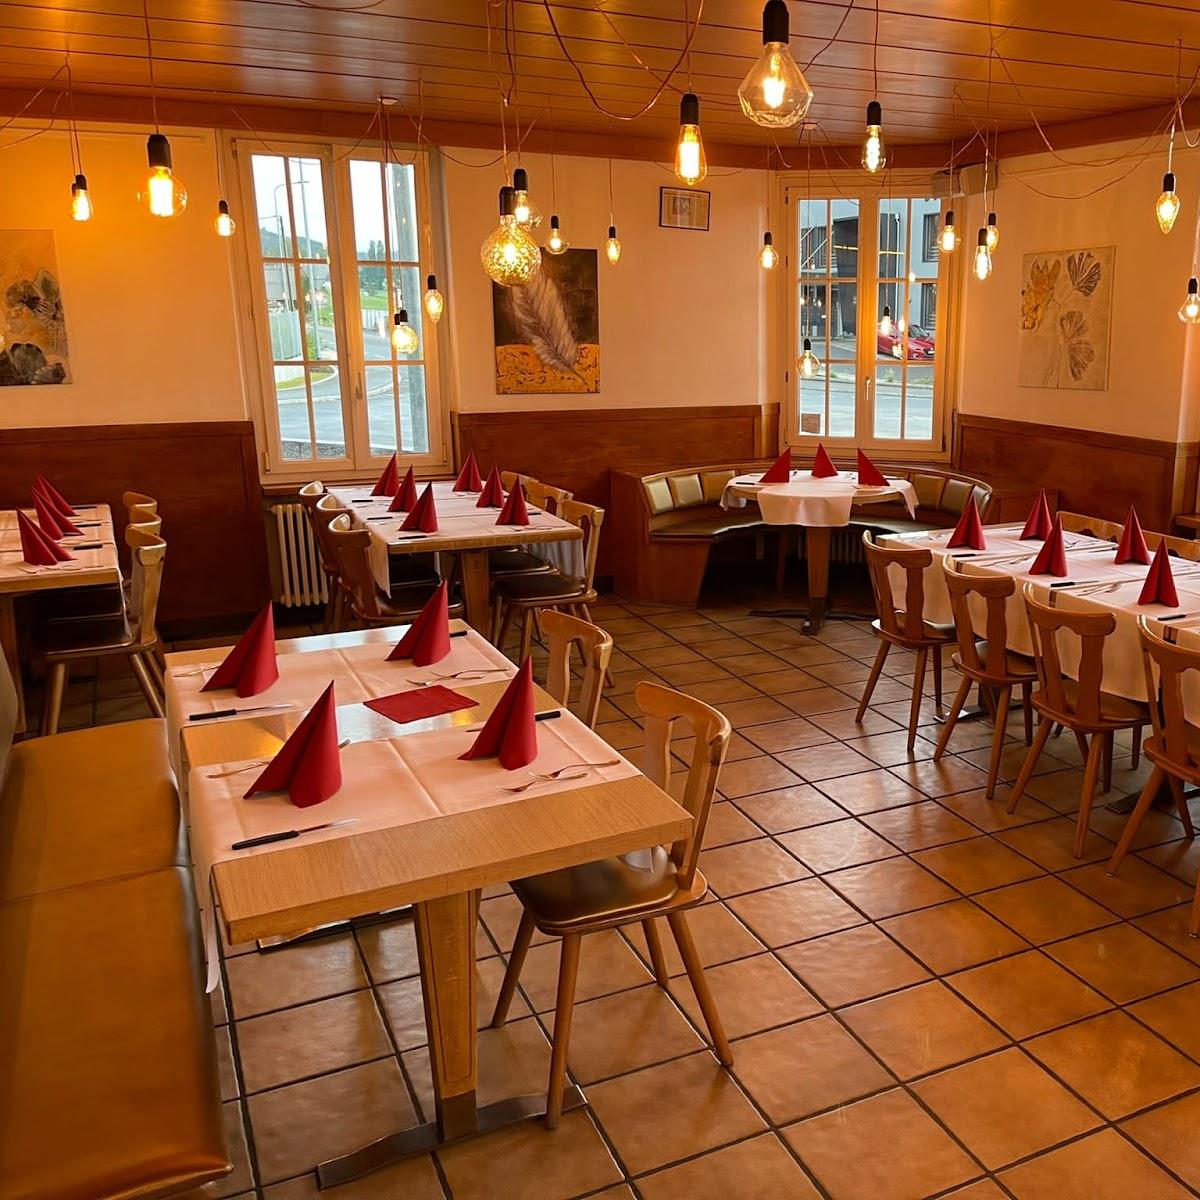 Restaurant "Casa Mia" in Remetschwil